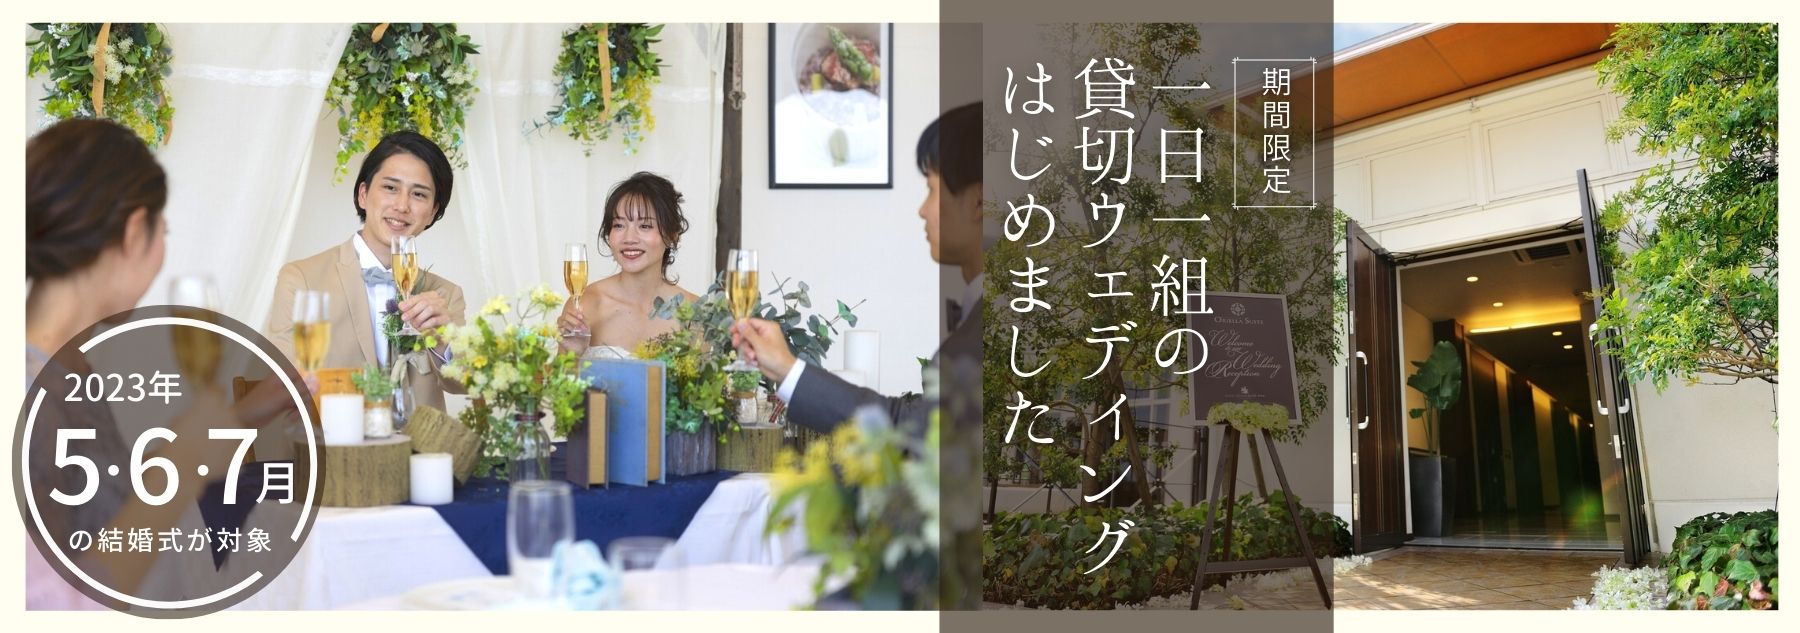 徳島県の人気の貸切の結婚式場のブランアンジュ